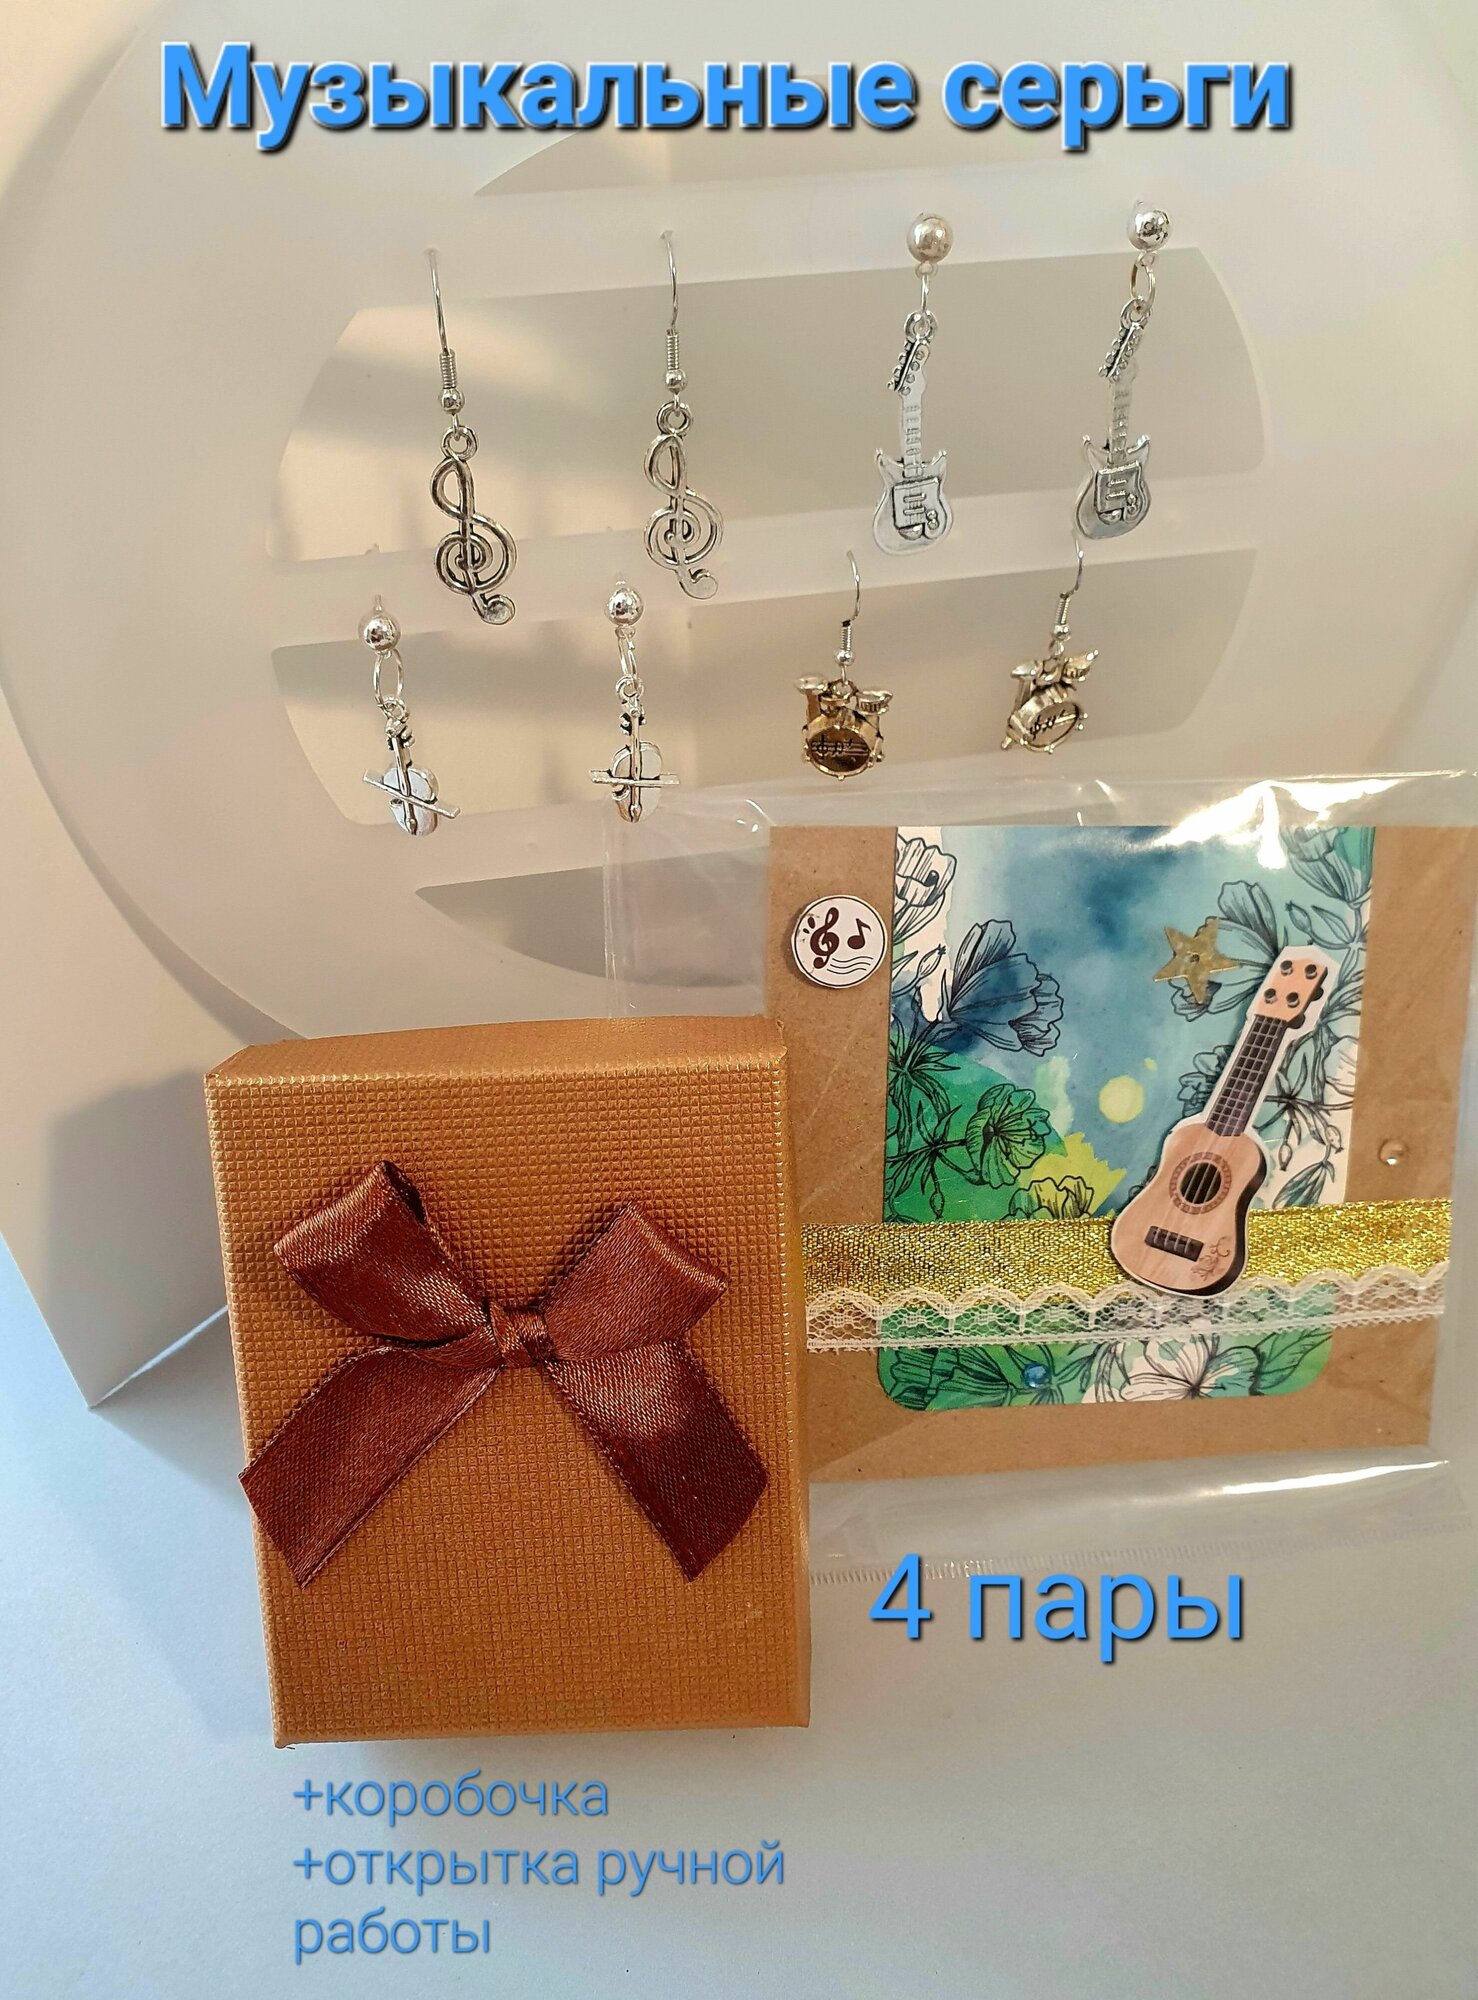 Набор серег, 4 пары, музыкальные инструменты, "Музыка"+ Подарок: открытка ручной работы и коробочка.